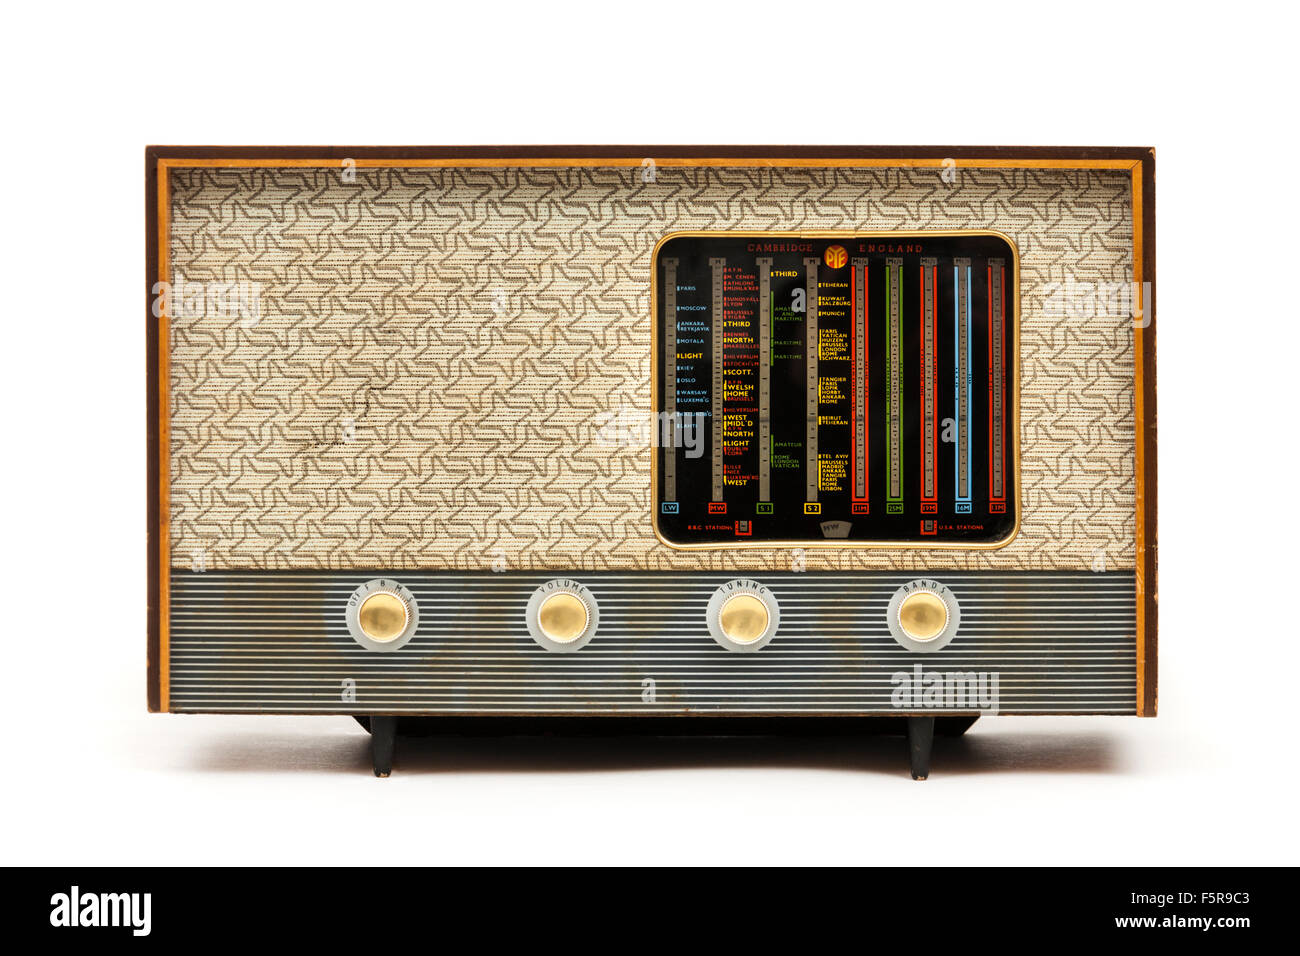 Pye P445U radio distributeur depuis les années 1950, faite à Cambridge, Angleterre Banque D'Images